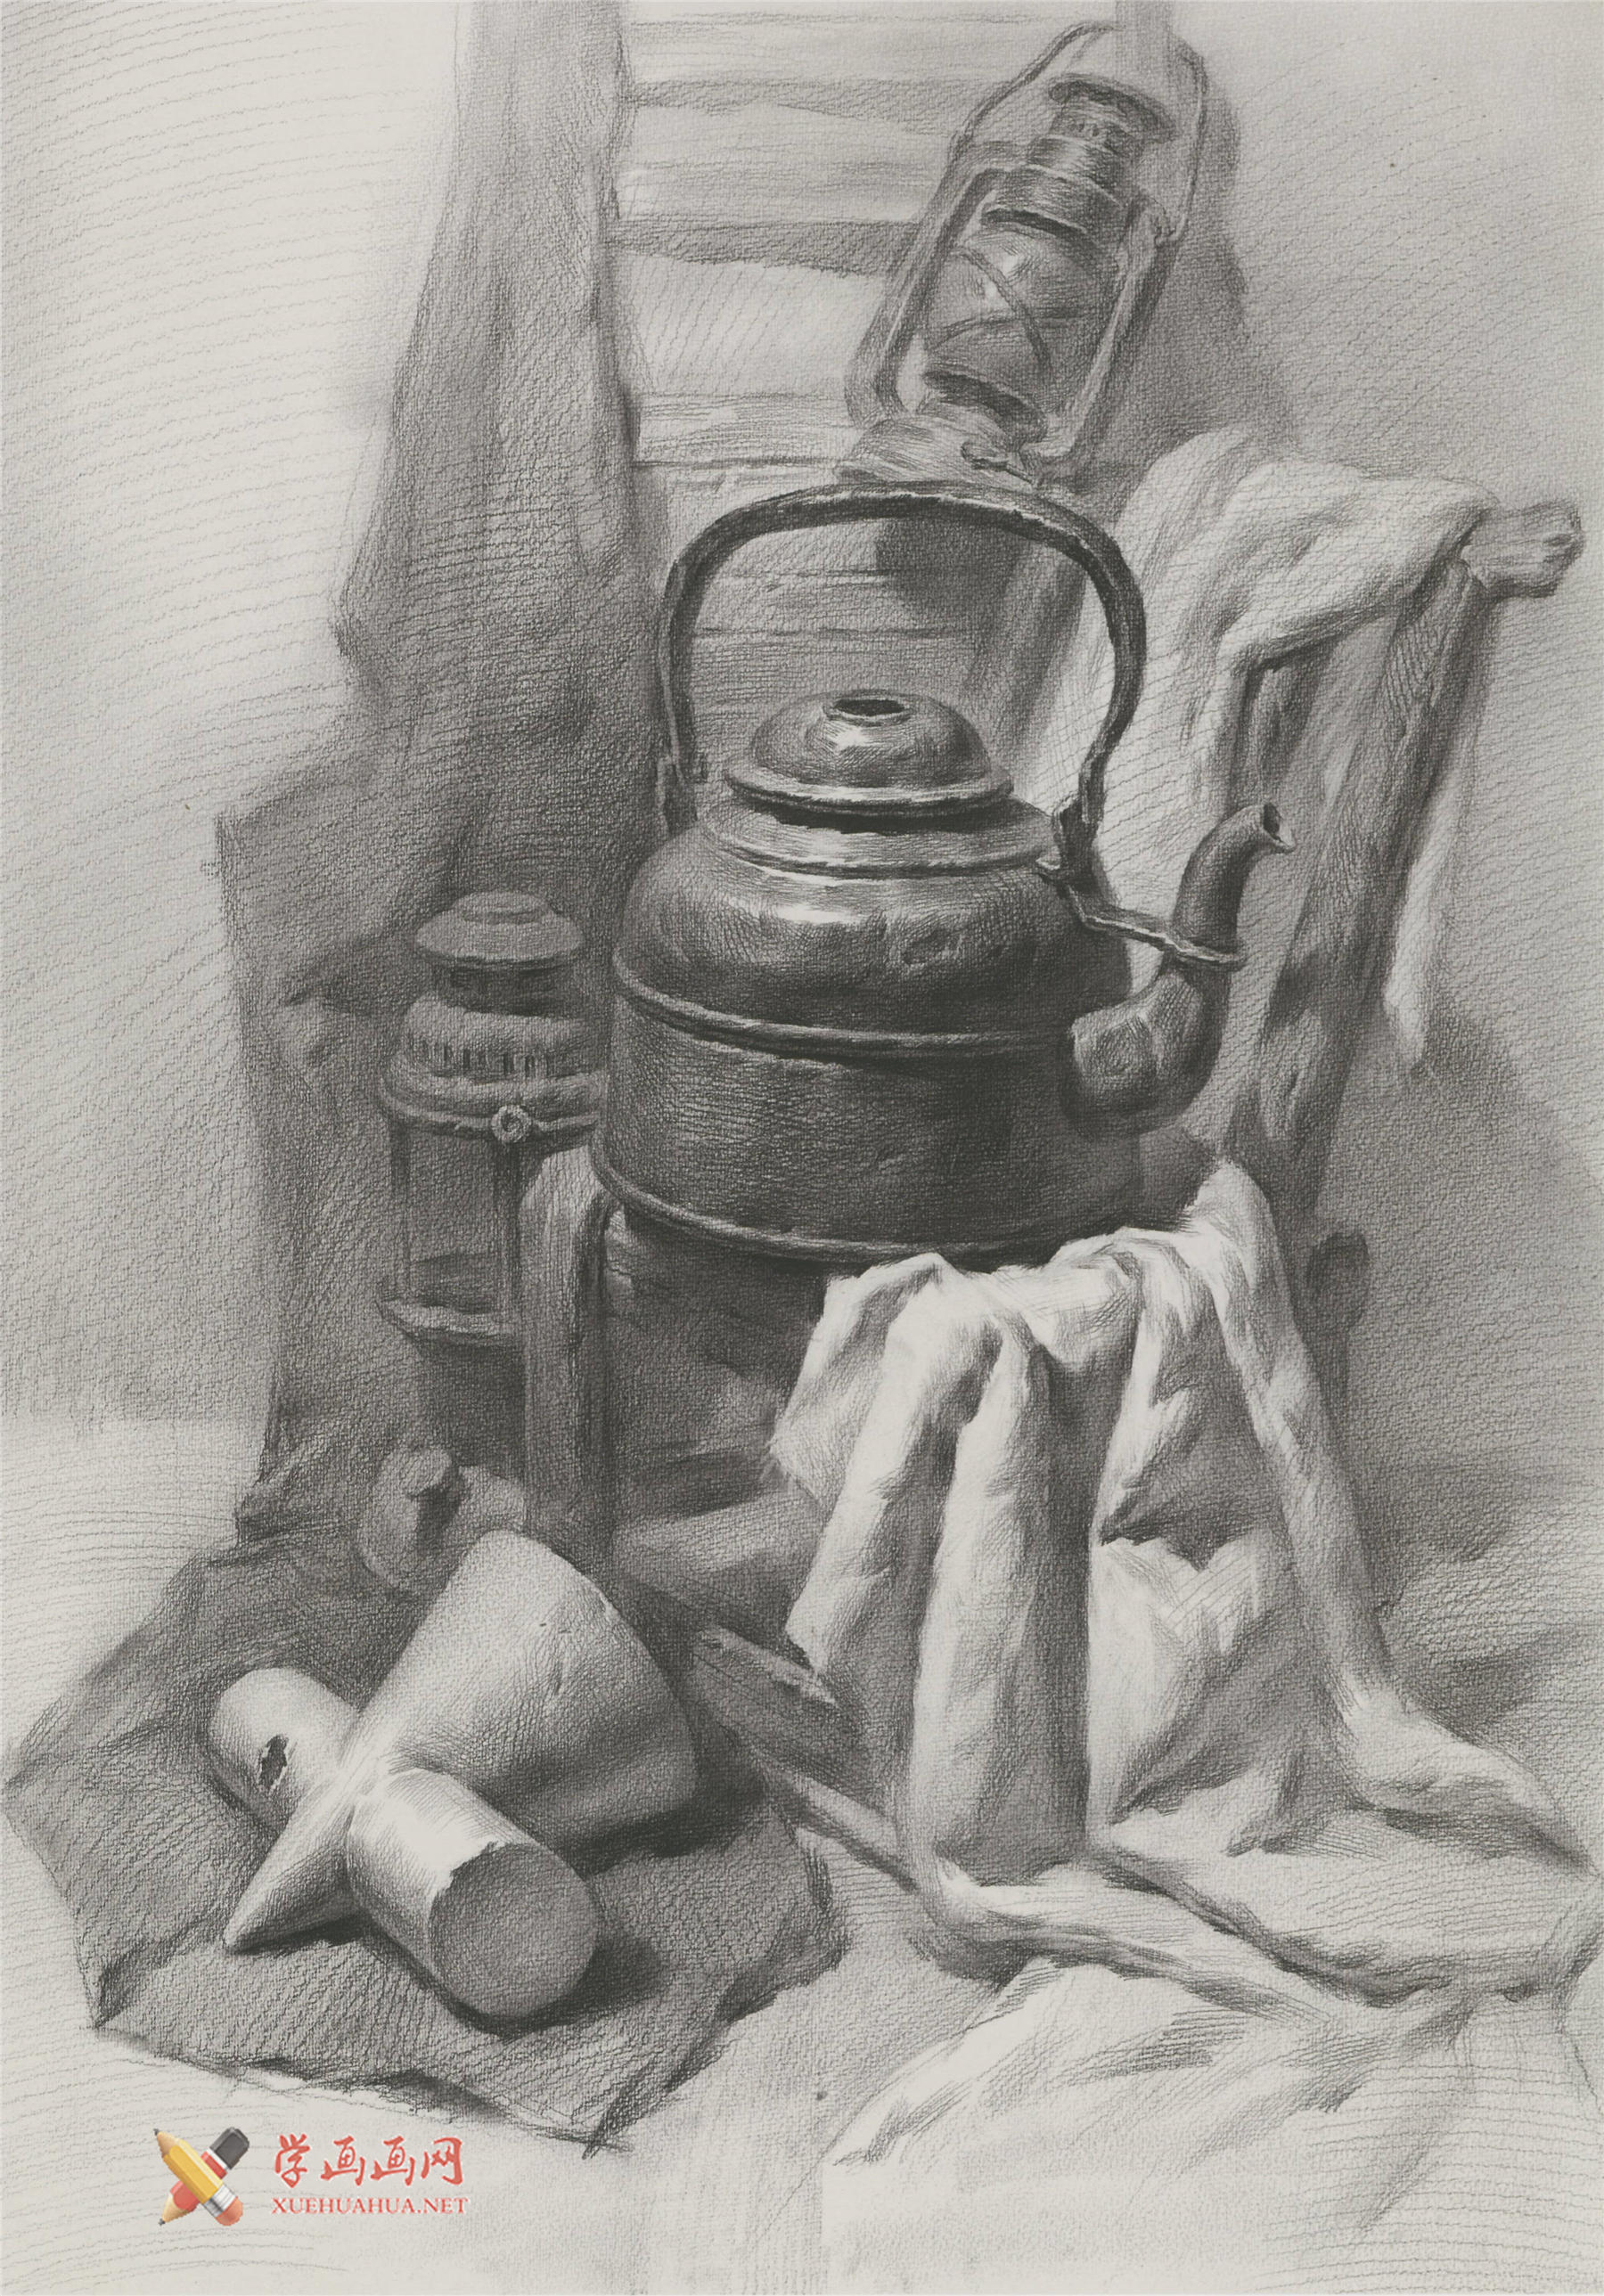 素描不锈钢水壶、马灯、石膏十字圆锥体、椅子、黑白衬布的组合画法图片(1)